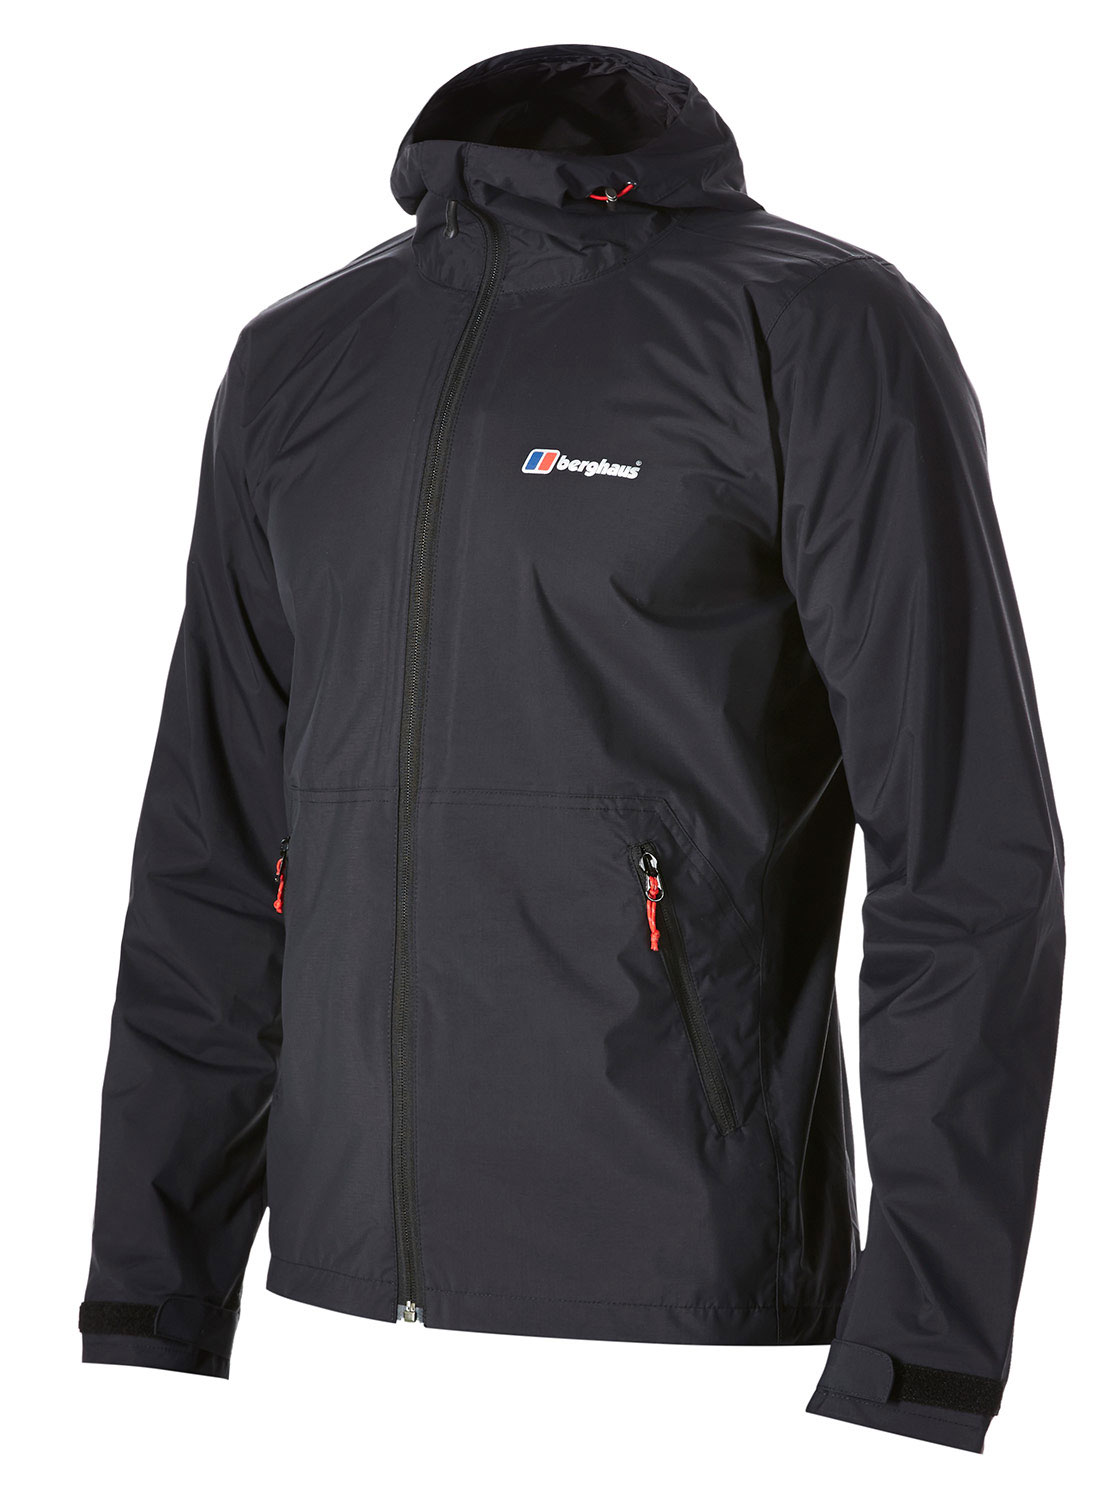 Berghaus Stormcloud Mens Jacket for waterproof, breathable comfort